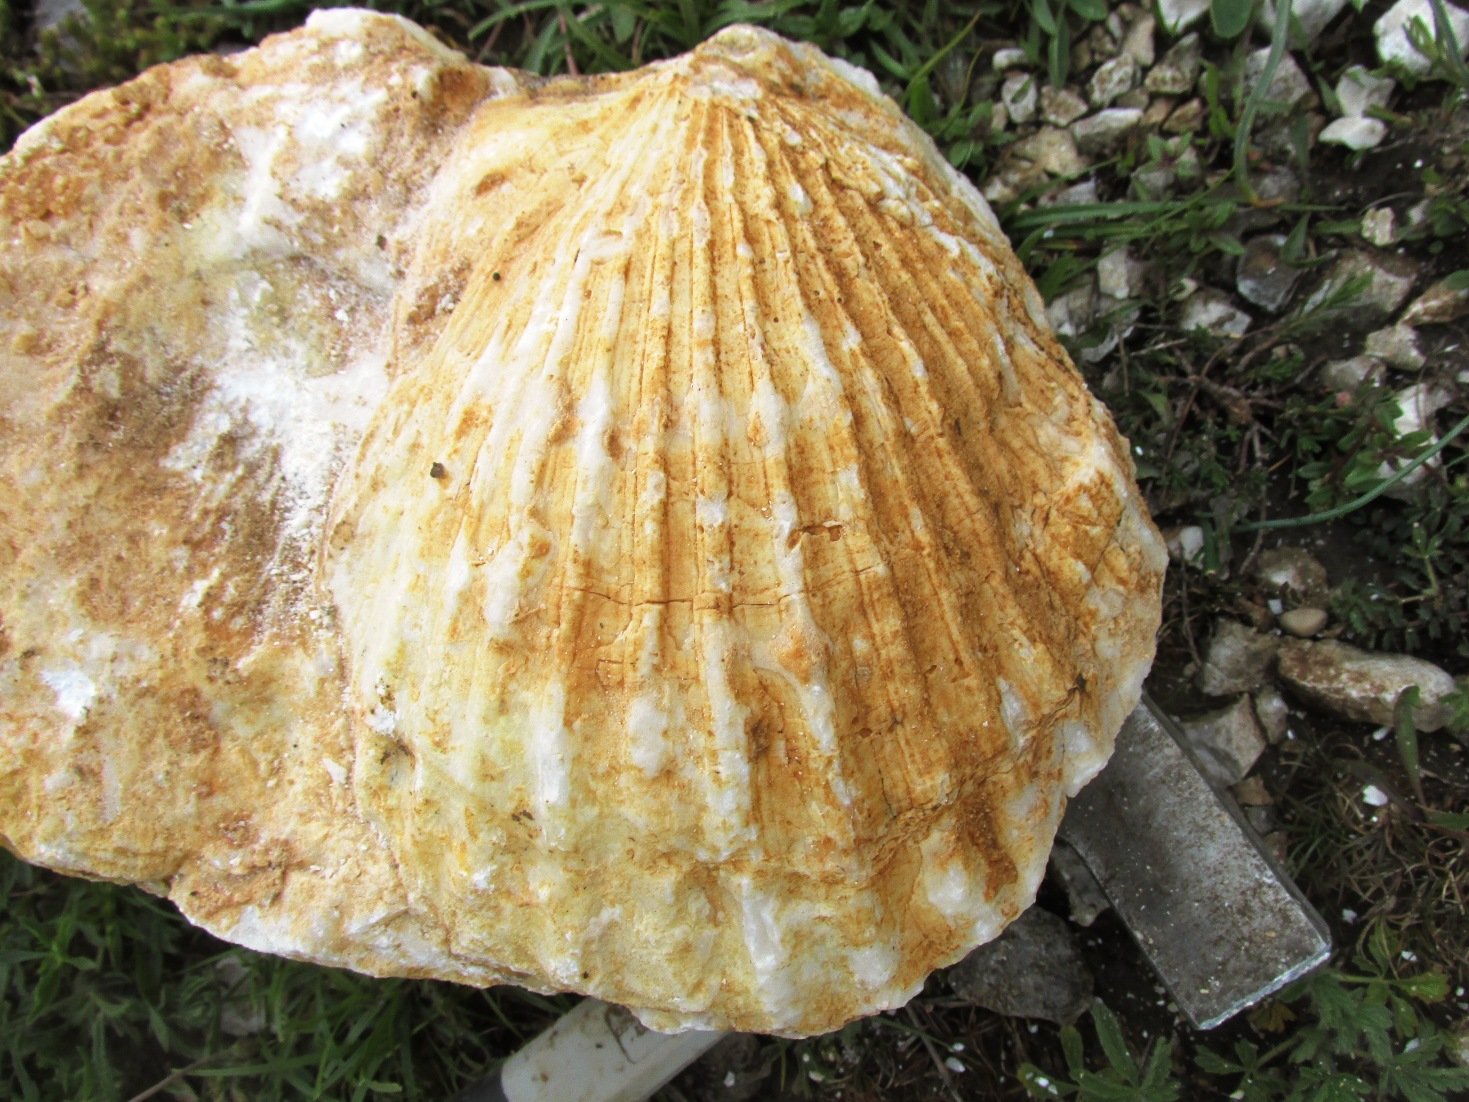 Fosili morskih školjki, stari preko 90 miliona godina, otkriveni na Raškoj Gori iznad Mostara